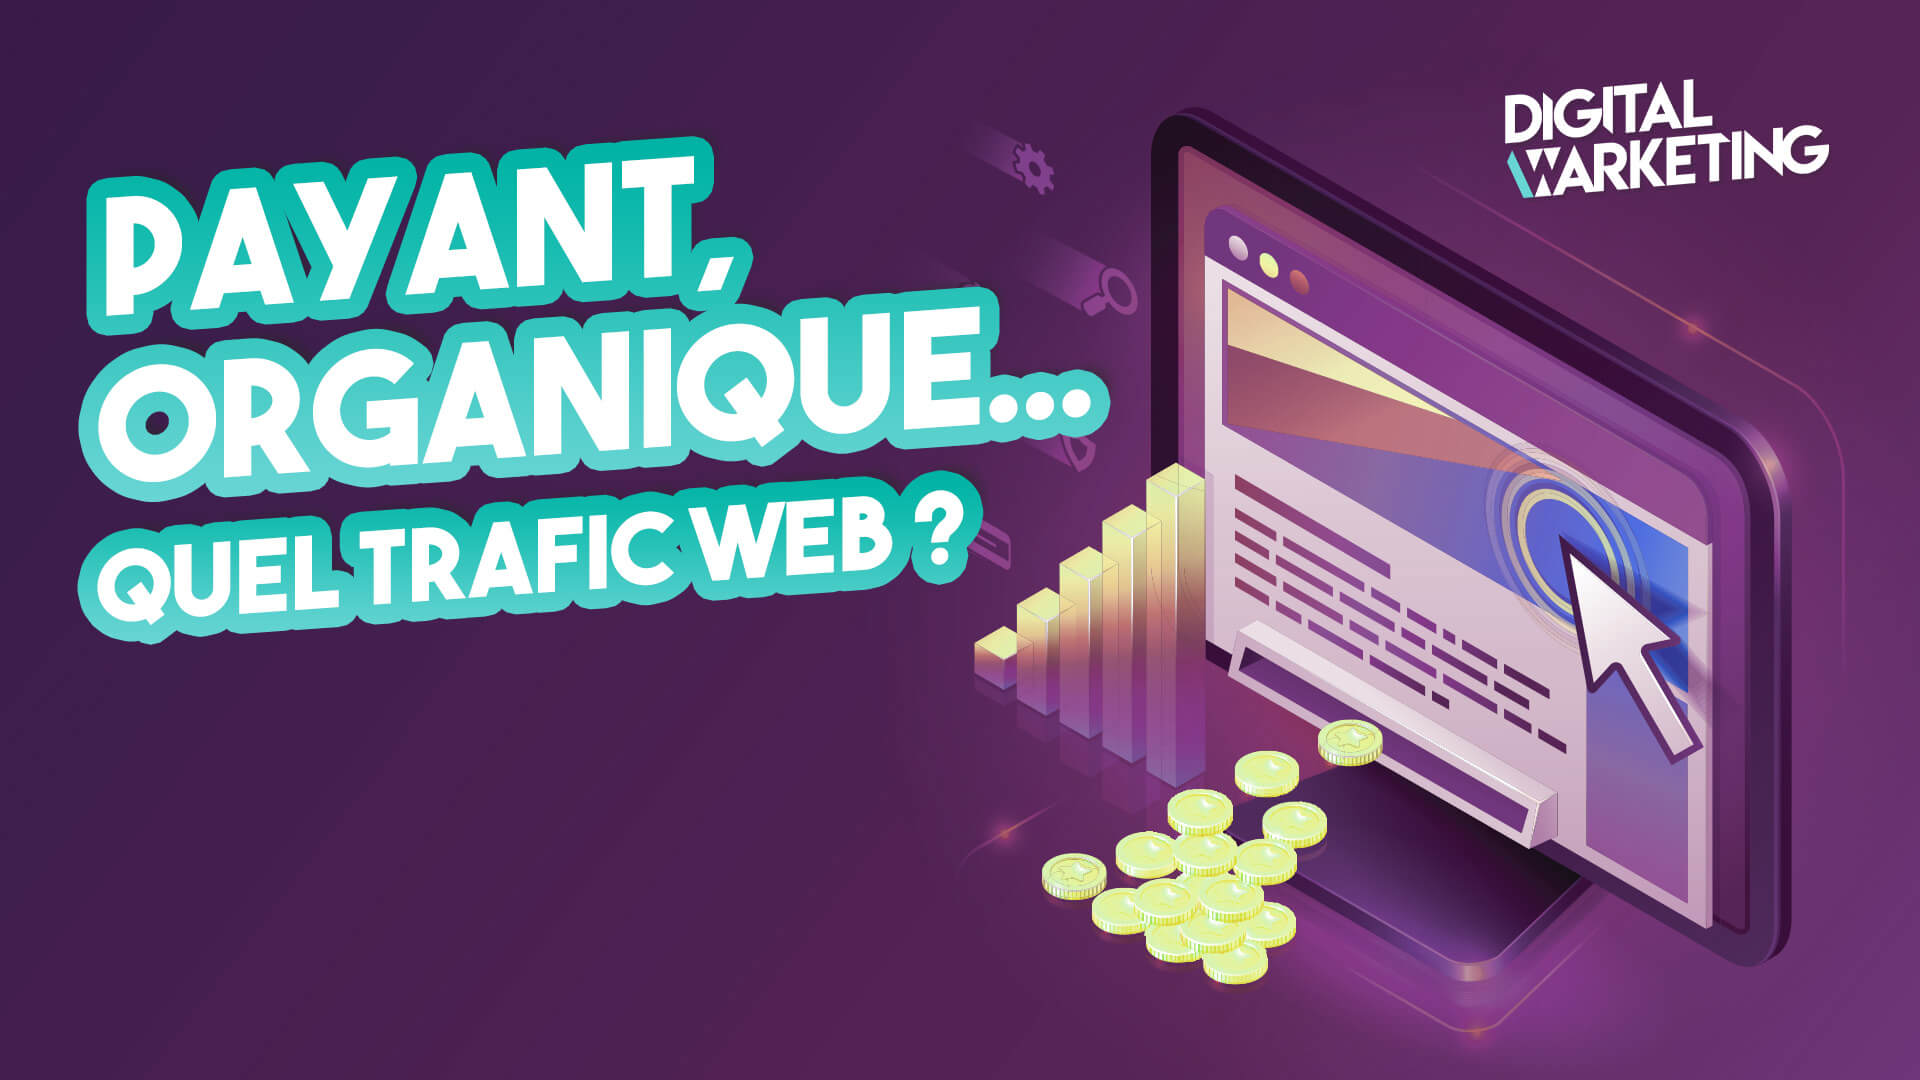 Payant, organique : Quel trafic web pour votre stratégie marketing digital ?